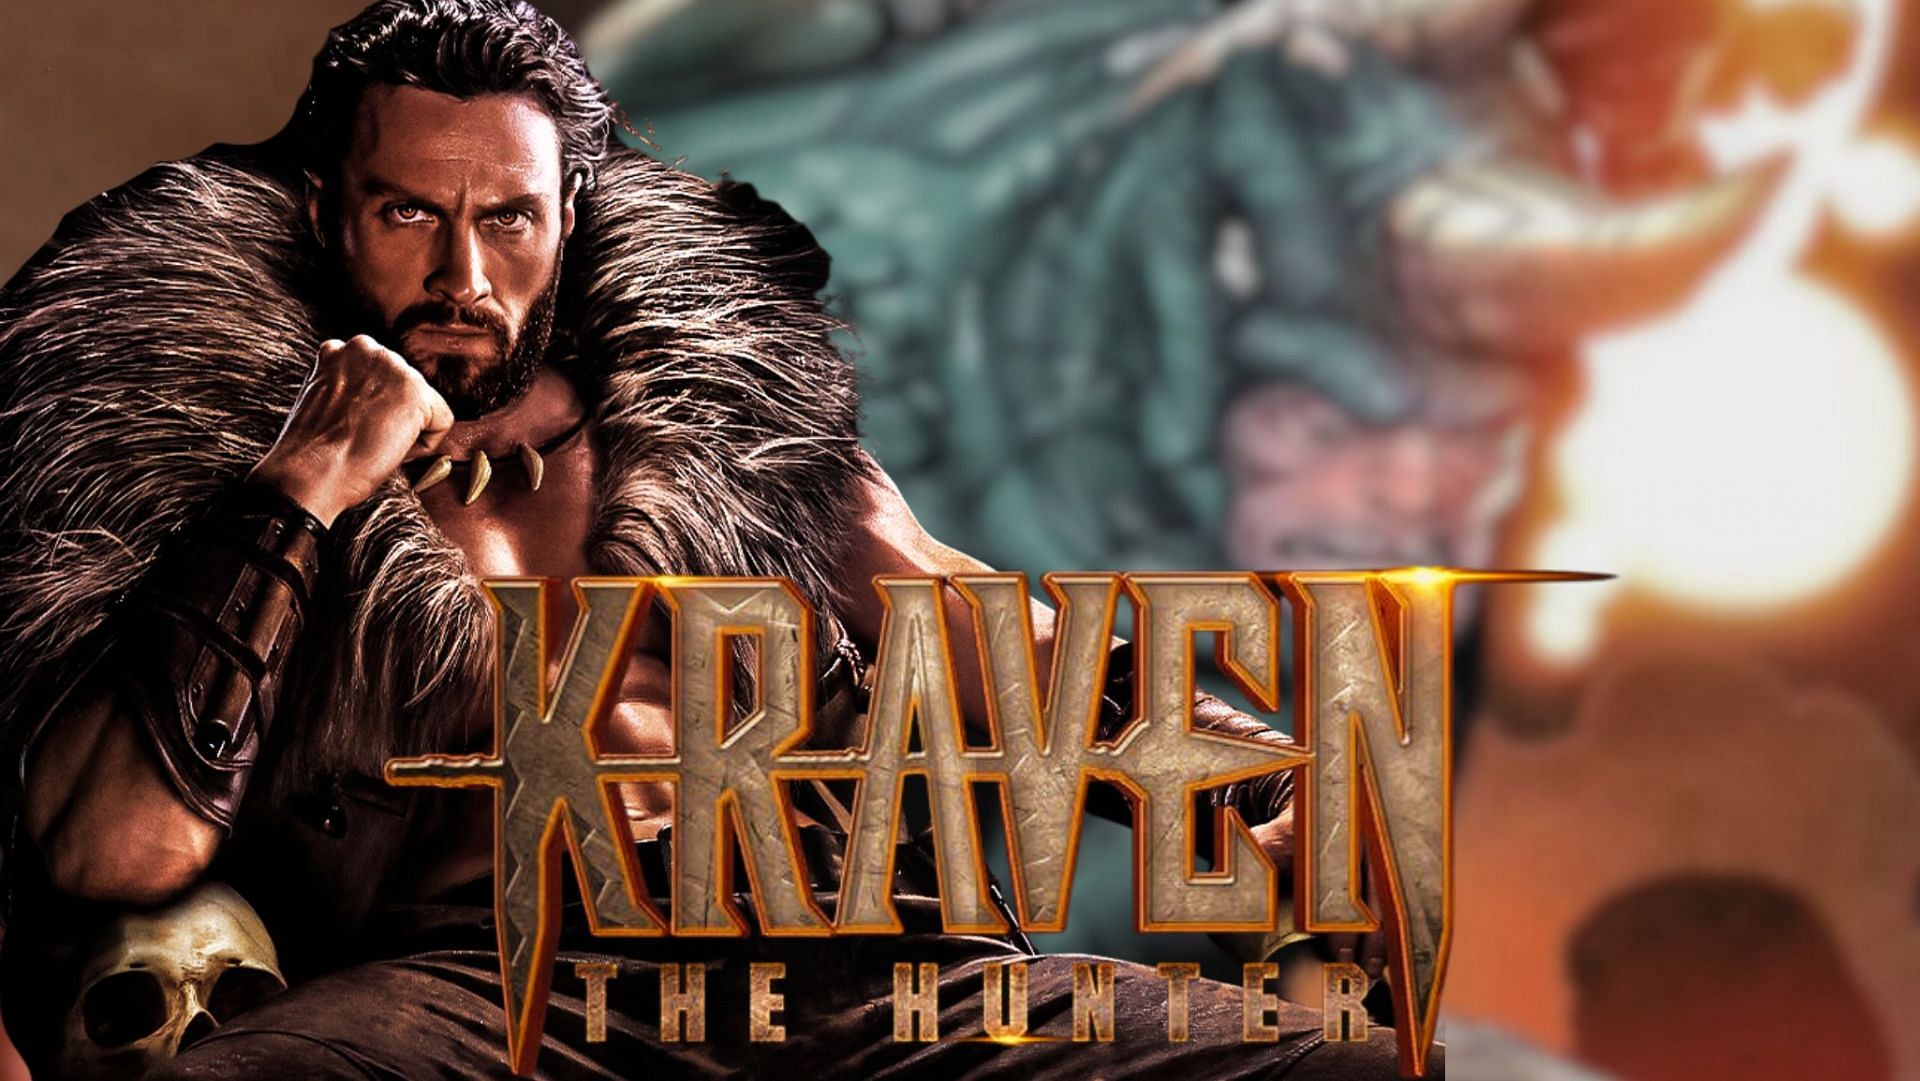 Kraven The Hunter trailer: 'Kraven The Hunter' trailer leaves